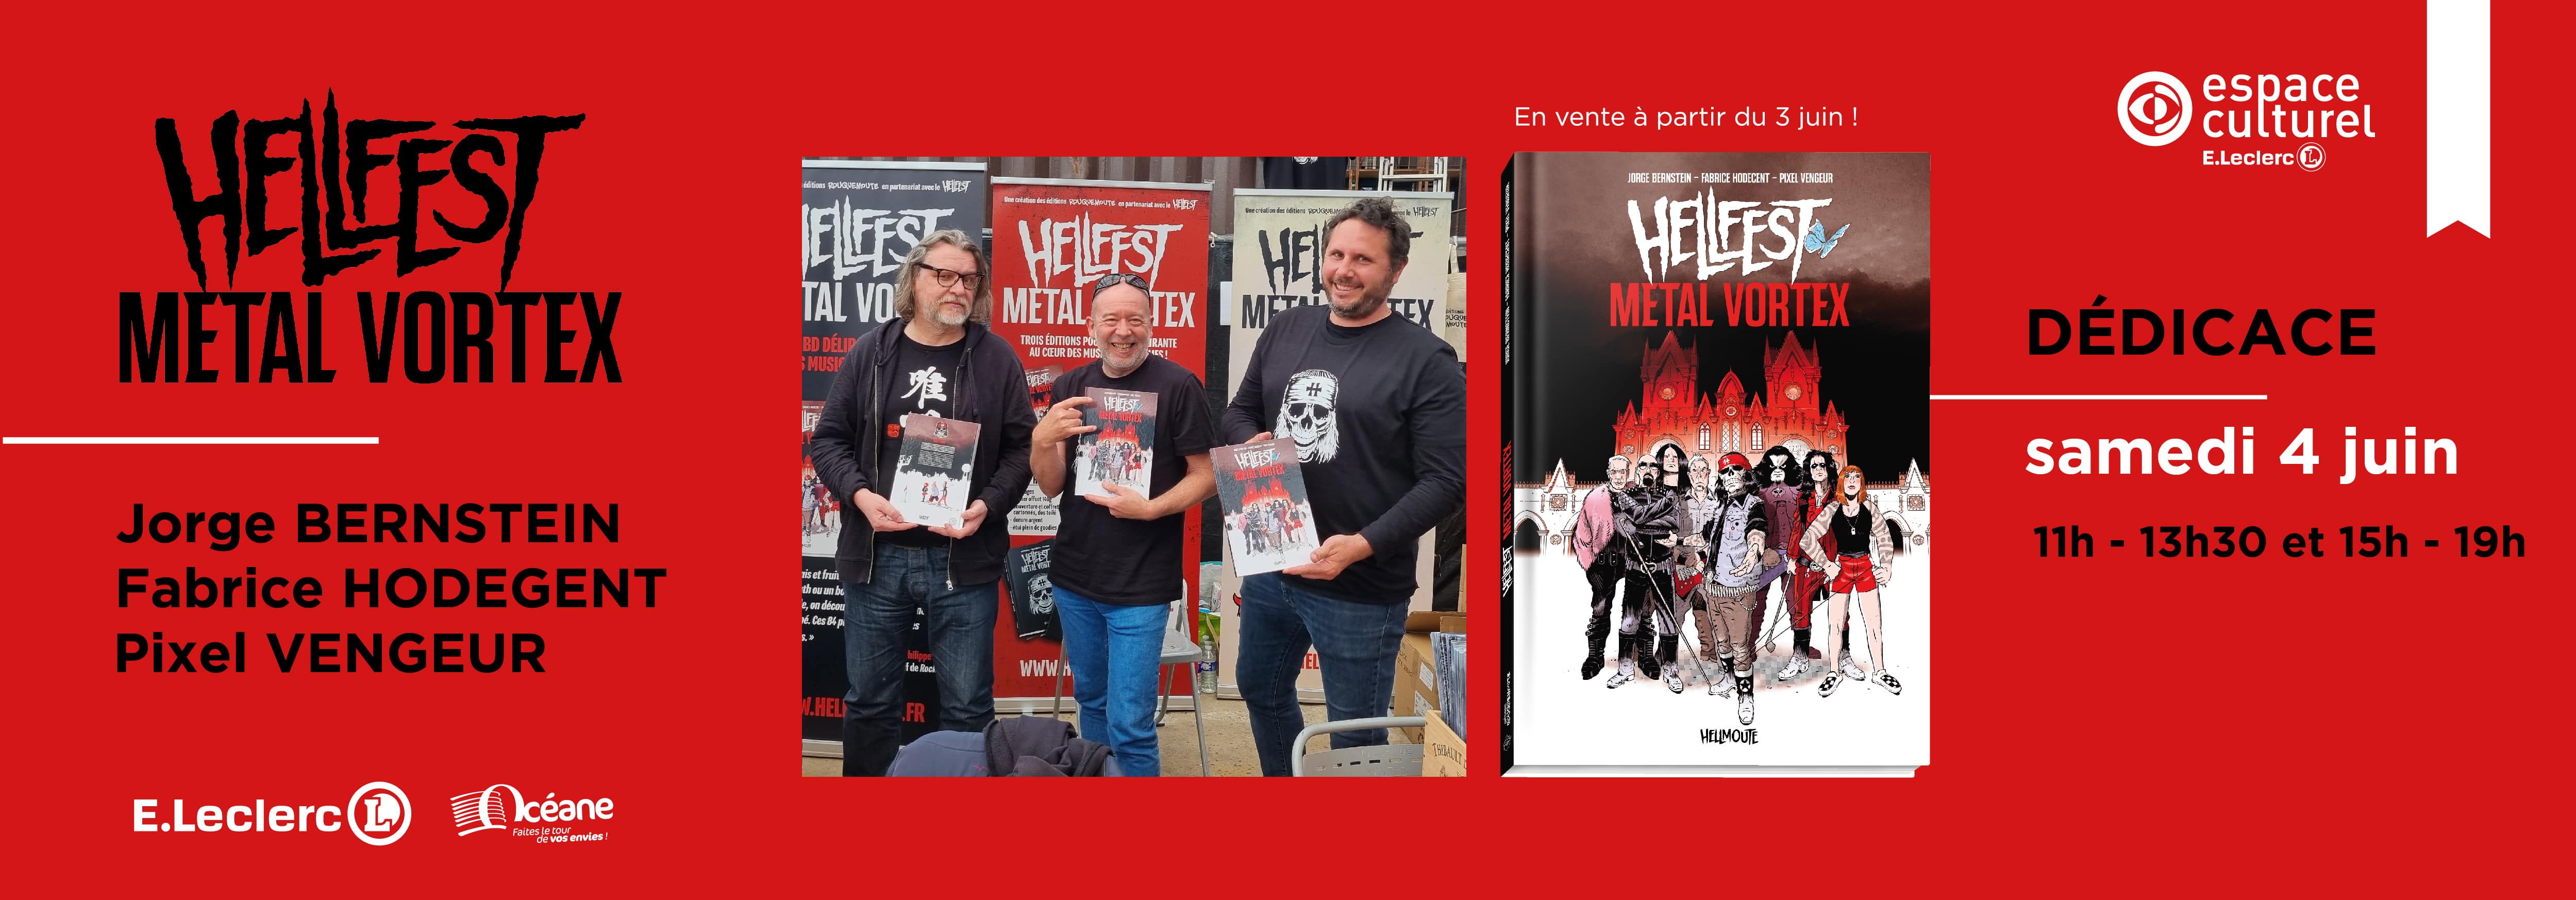 Hellfest Metal Vortex_Slider home-min